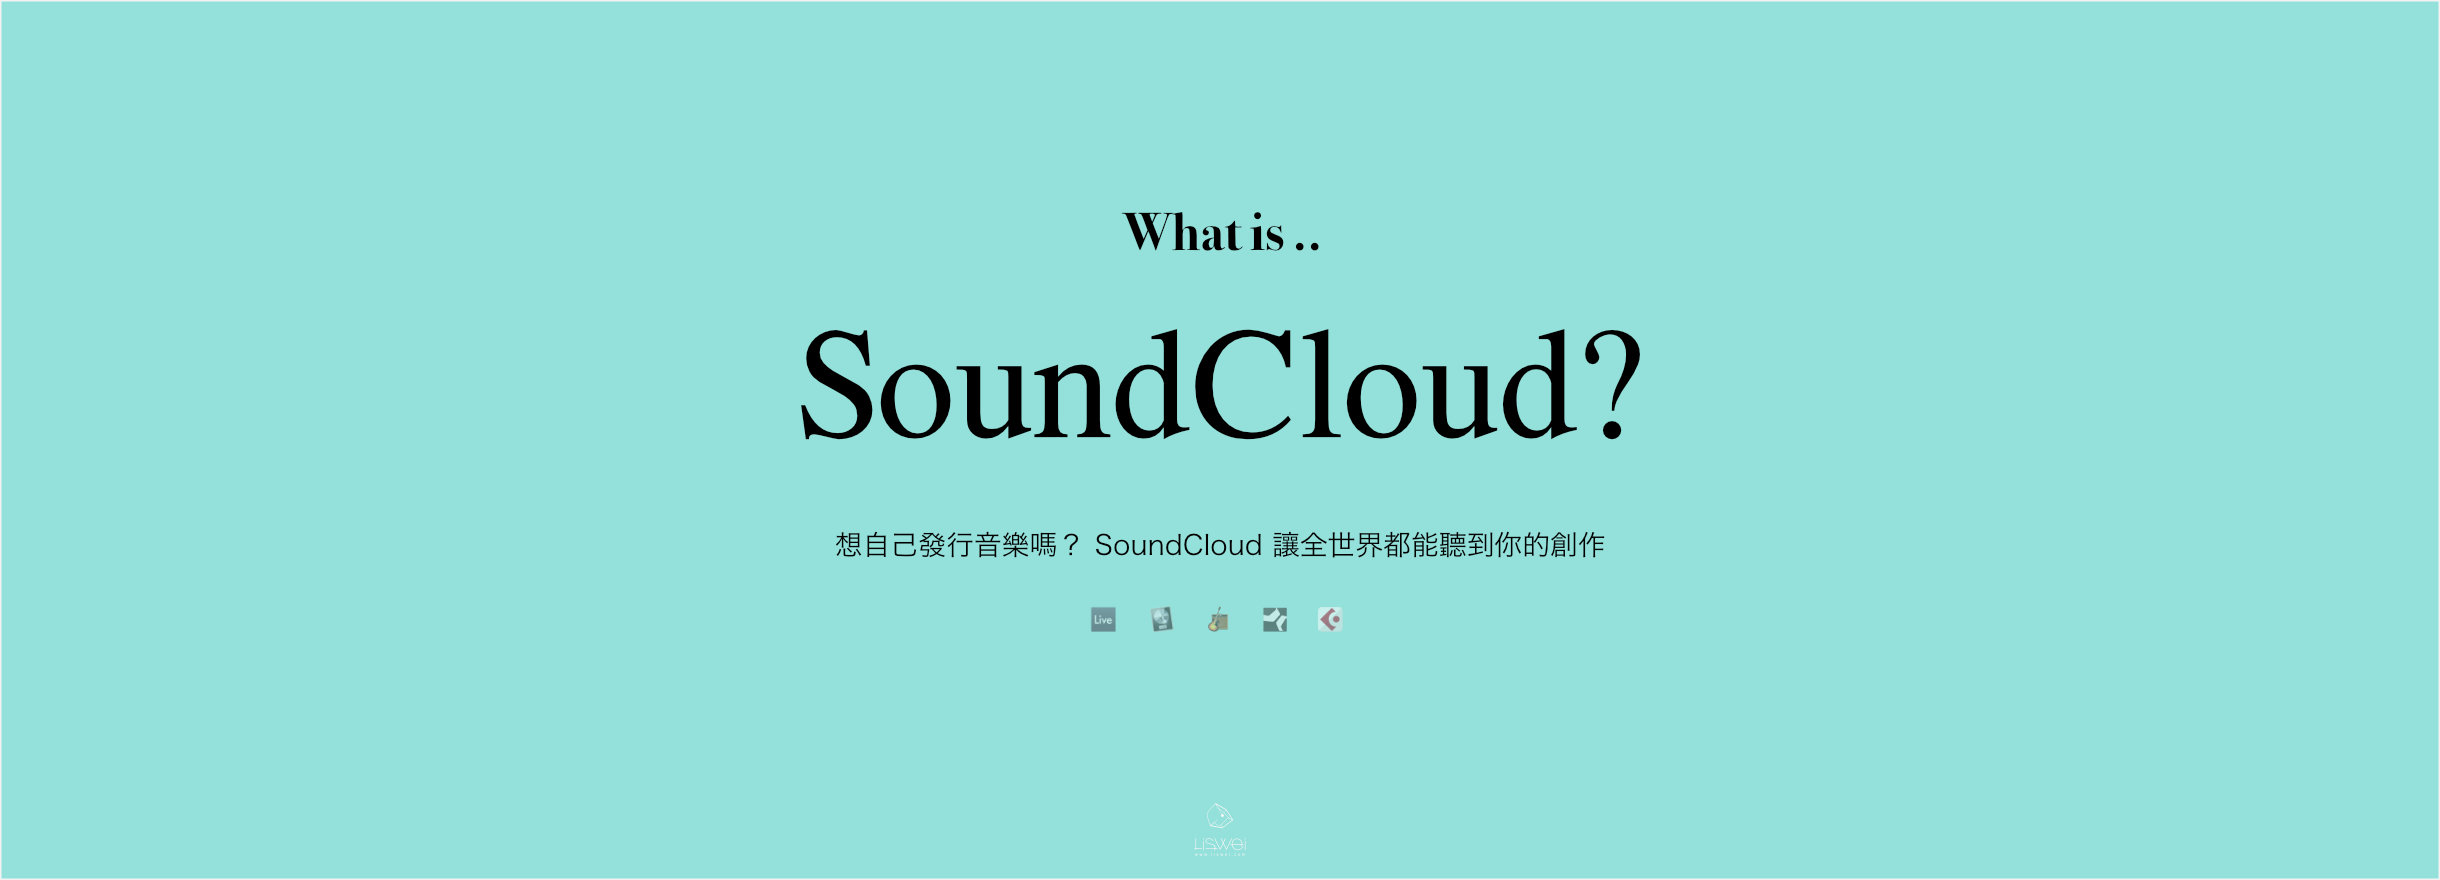 想自己發行音樂嗎？ SoundCloud 讓全世界都能聽到你的創作